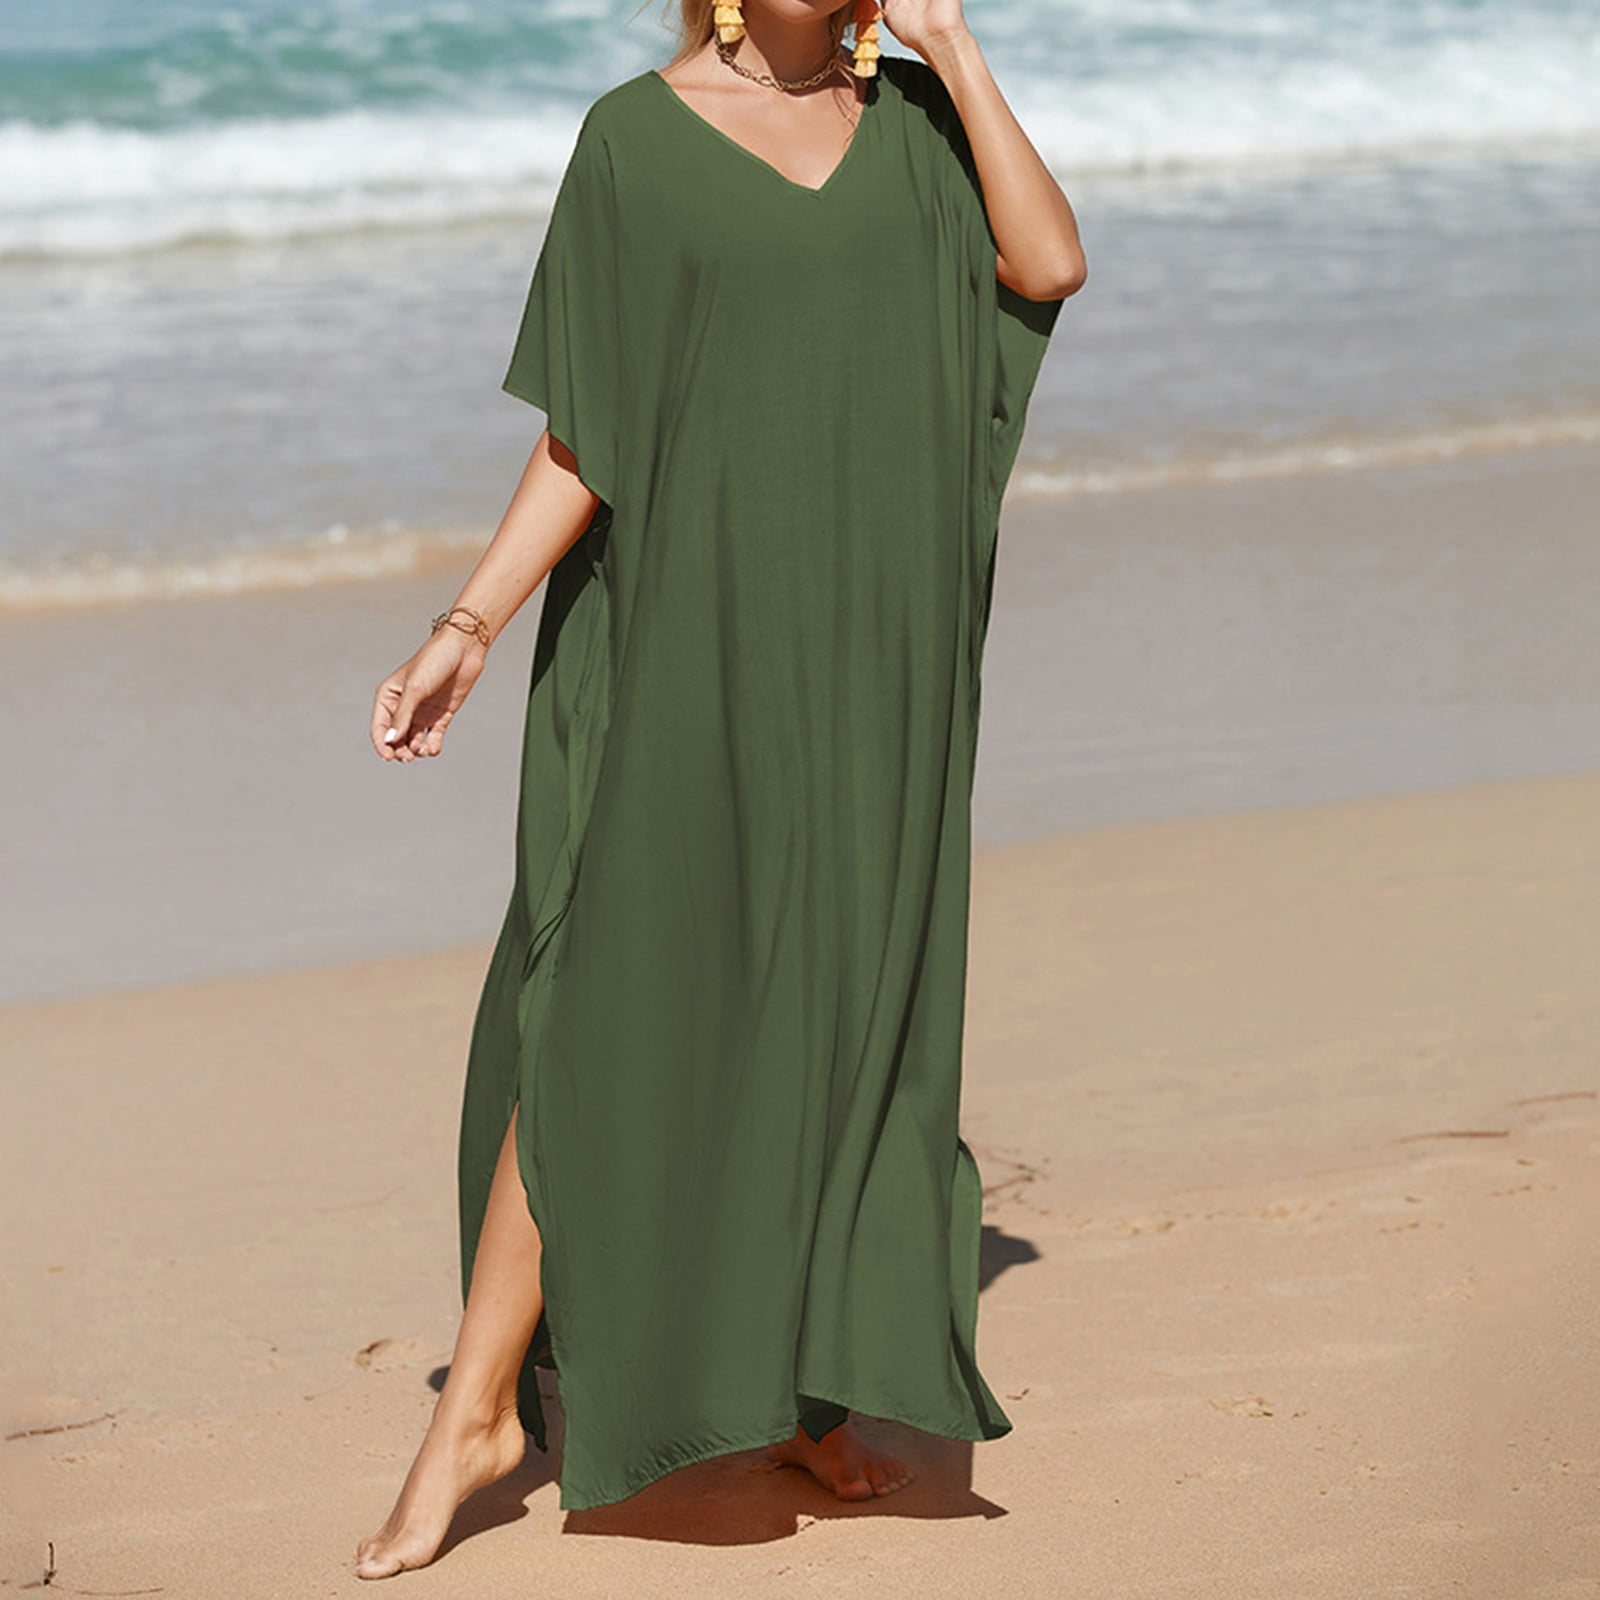 Capreze Women Long Dress Lace Up Summer Beach Sundress Side Slit Maxi  Dresses Kaftan Sleeveless Green L 